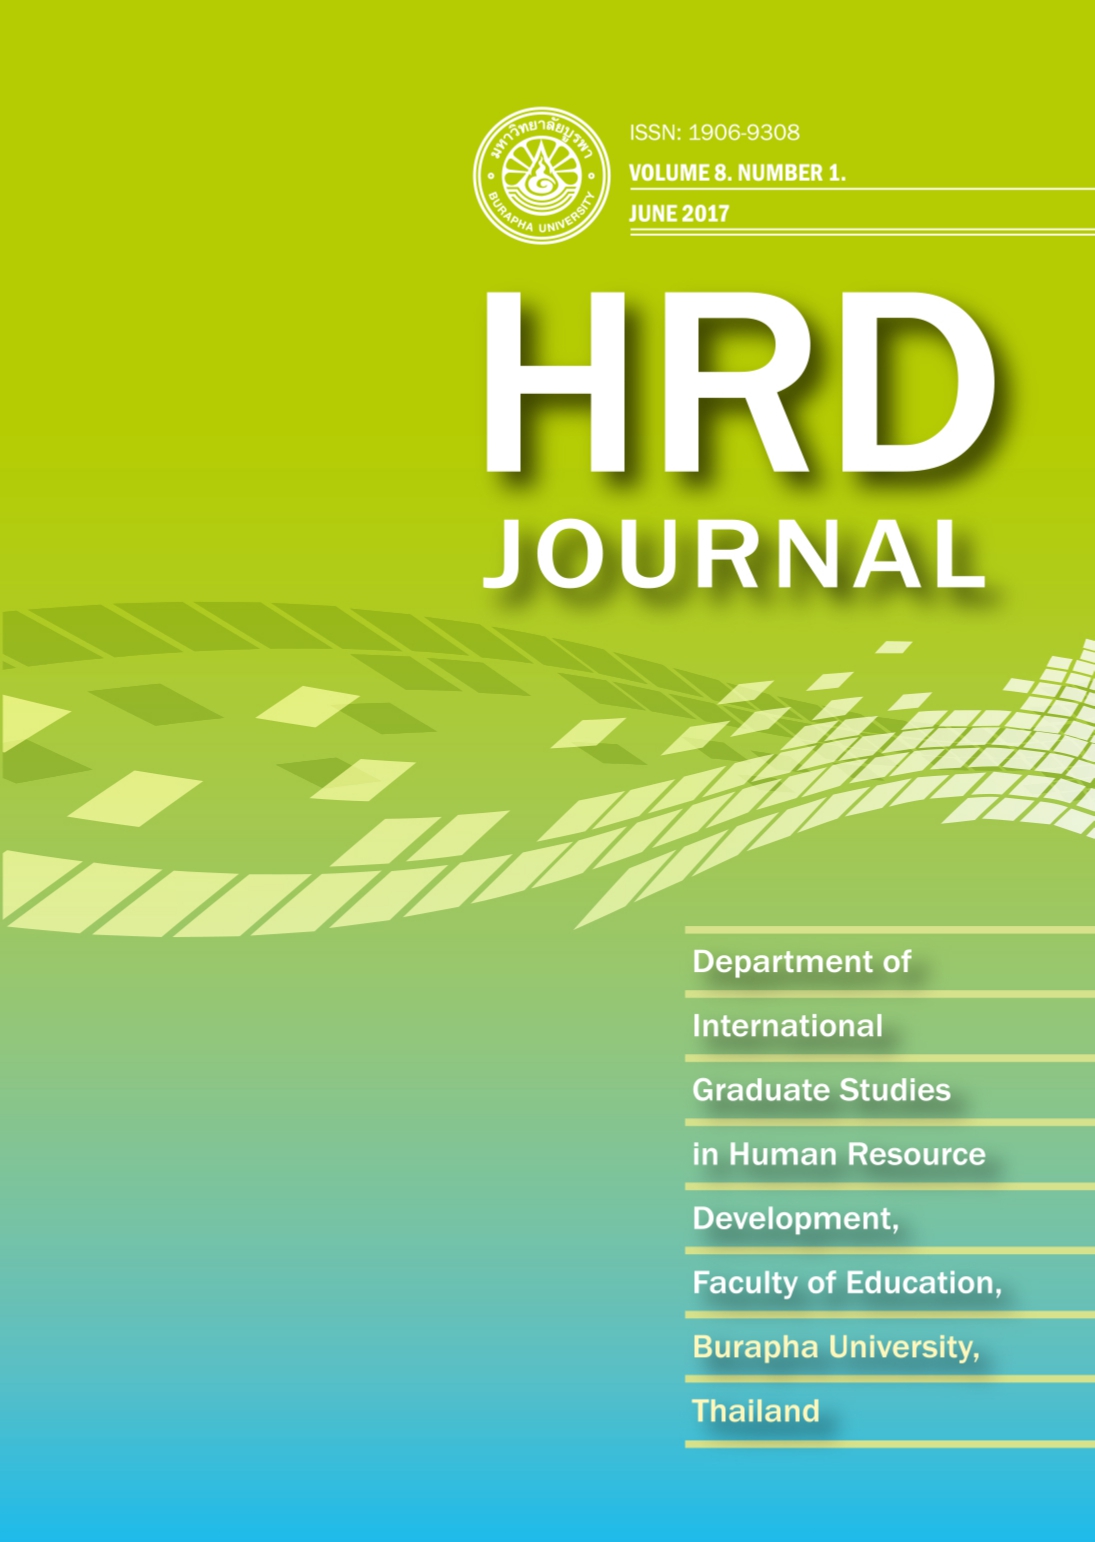 					View Vol. 8 No. 1 (2017): HRD Journal, Vol. 8, No. 1 June 2017
				